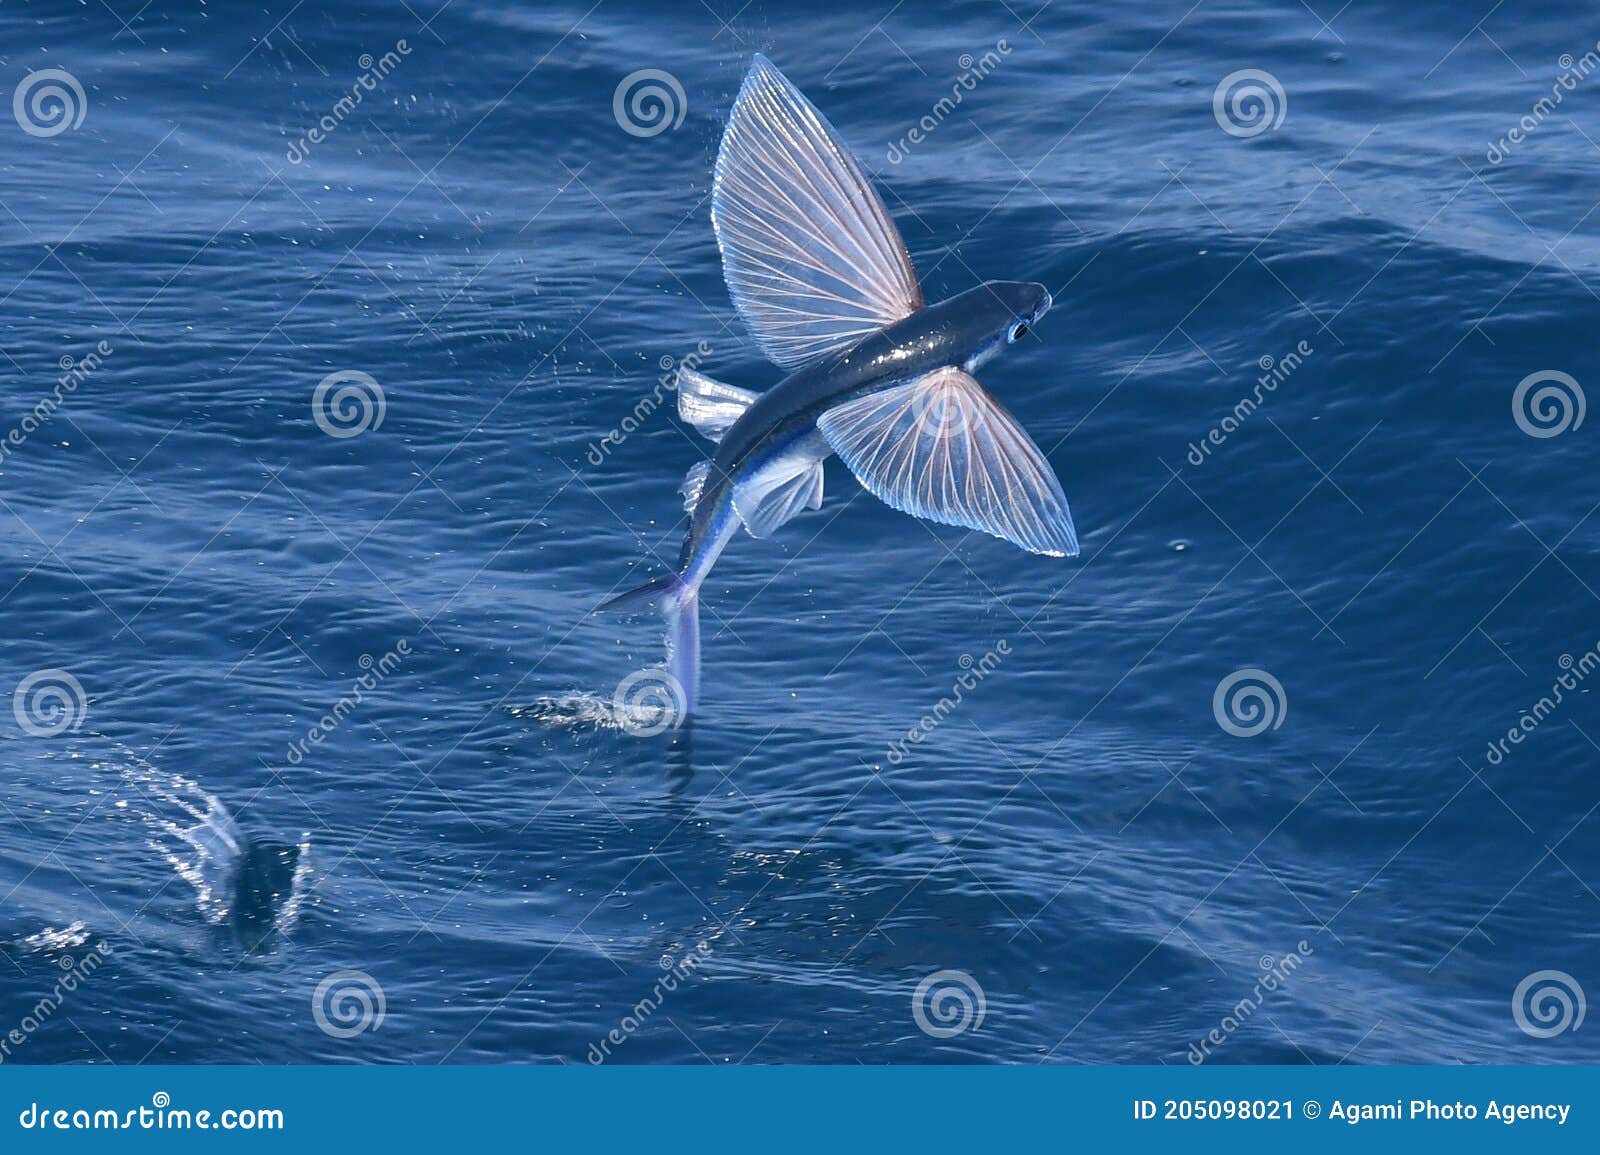 Flying fish species stock image. Image of species, steijn - 205098021